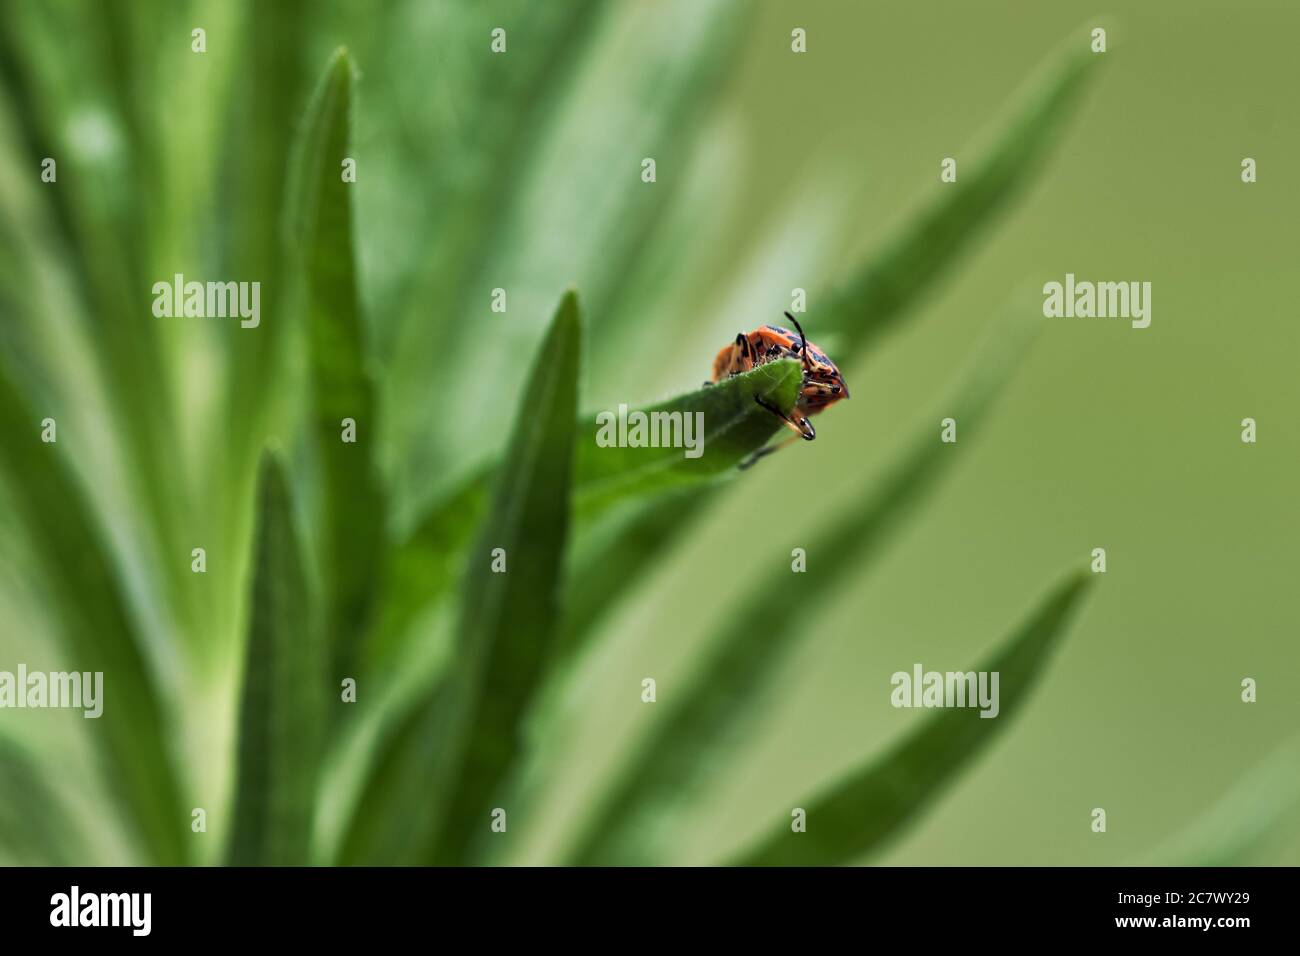 Piccolo firebug (Pyrhocoris appterus) strisciando sul bordo di una foglia in natura verde Foto Stock